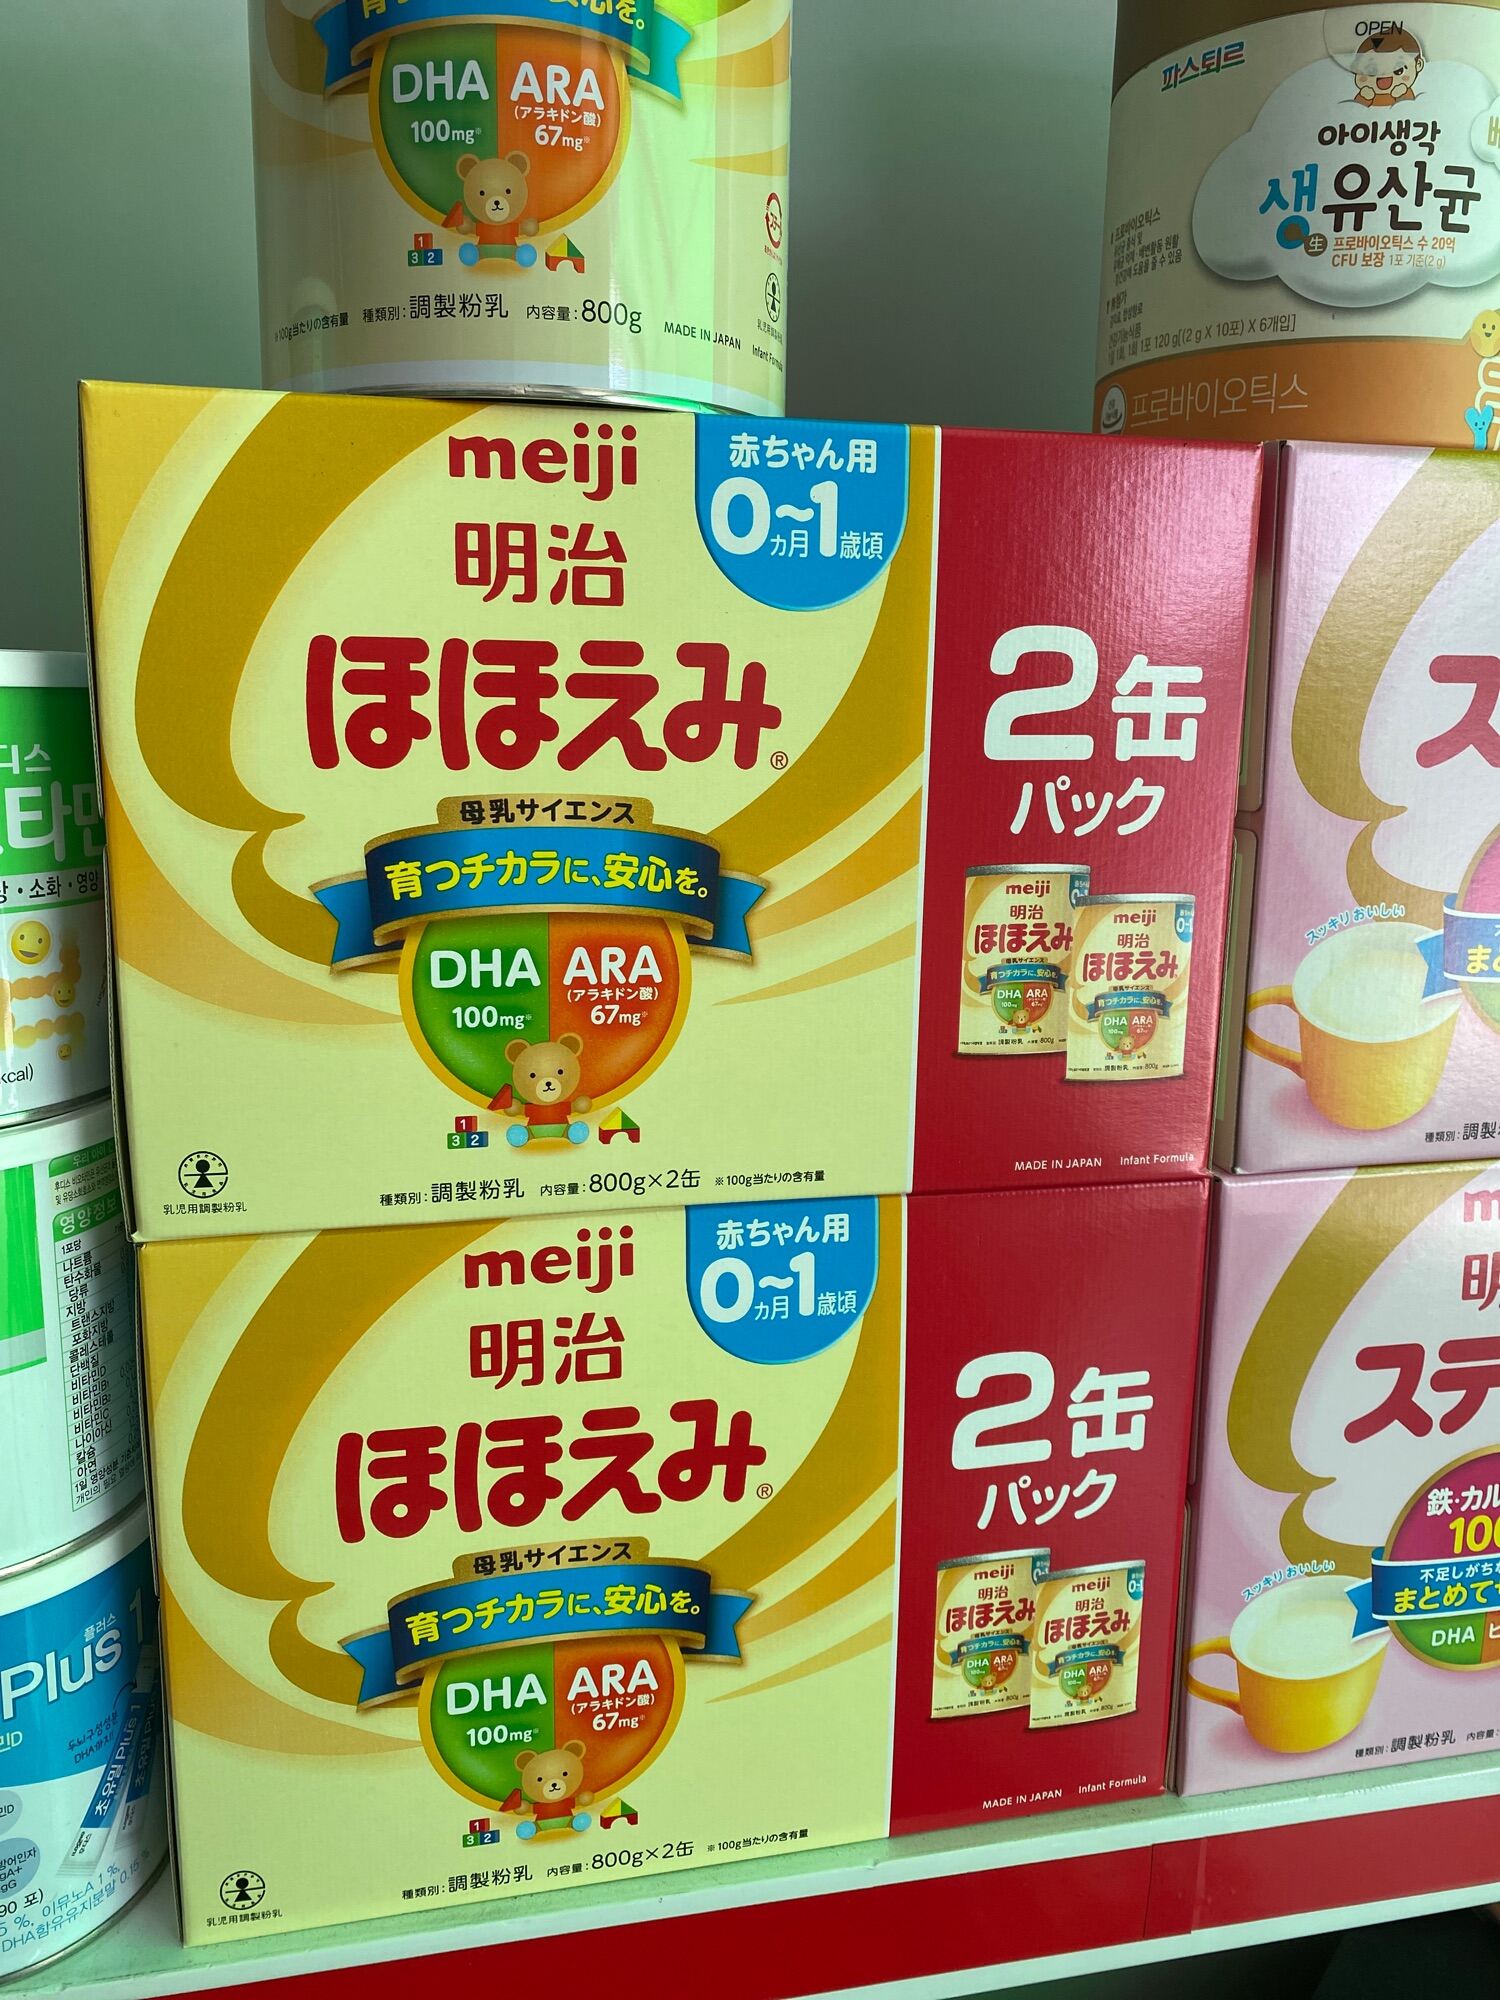 Sữa meiji cho trẻ từ 0-1 tuổi